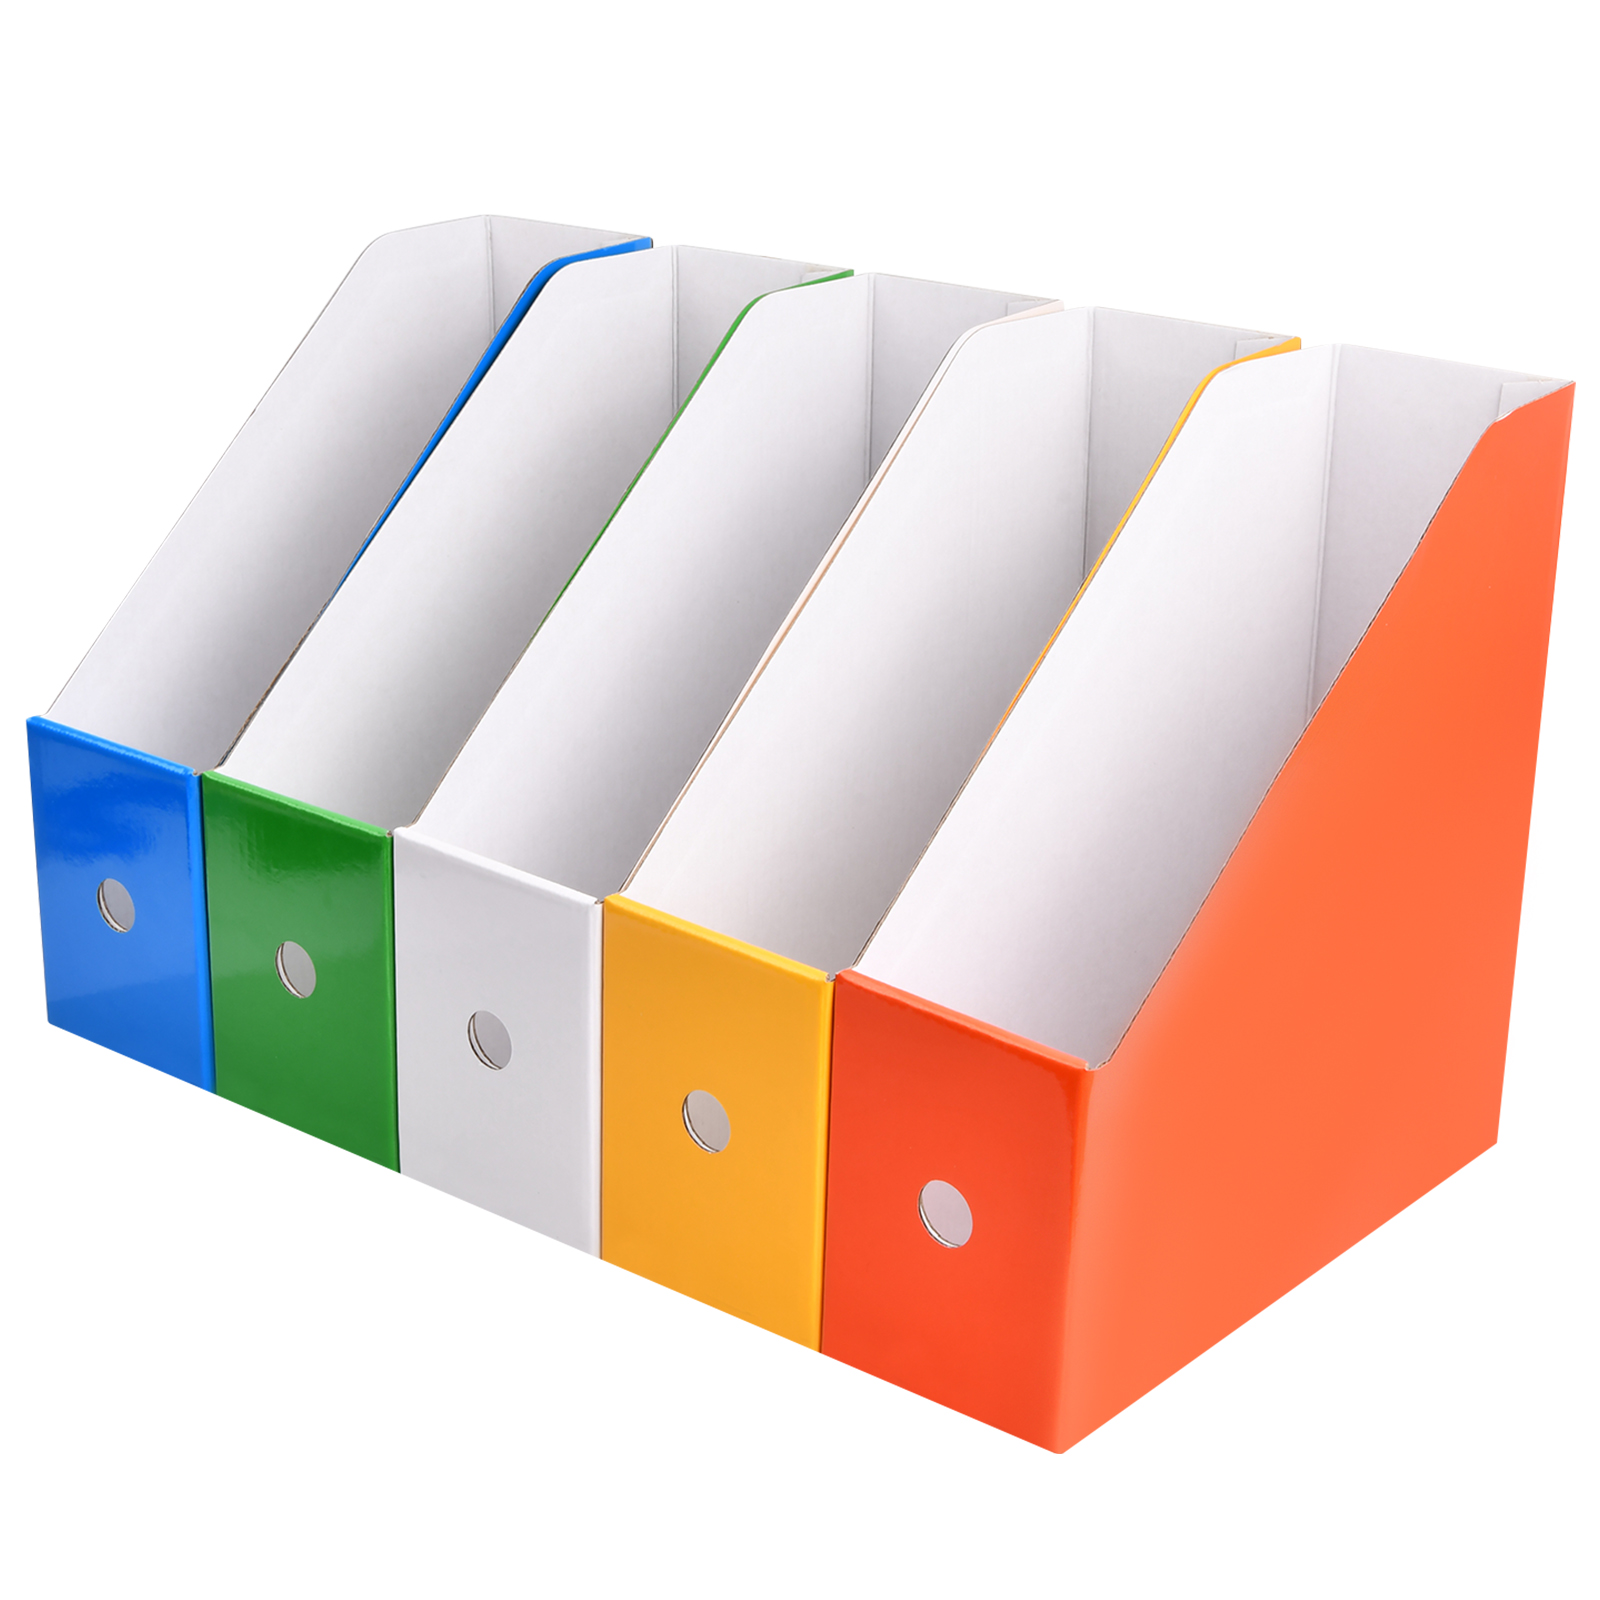  EasyPAG Organizador de archivos de pared colgante de 5 niveles,  soporte para archivos de escritorio, organizador de papel de correo,  revistero de documentos para el hogar y la oficina, color negro 